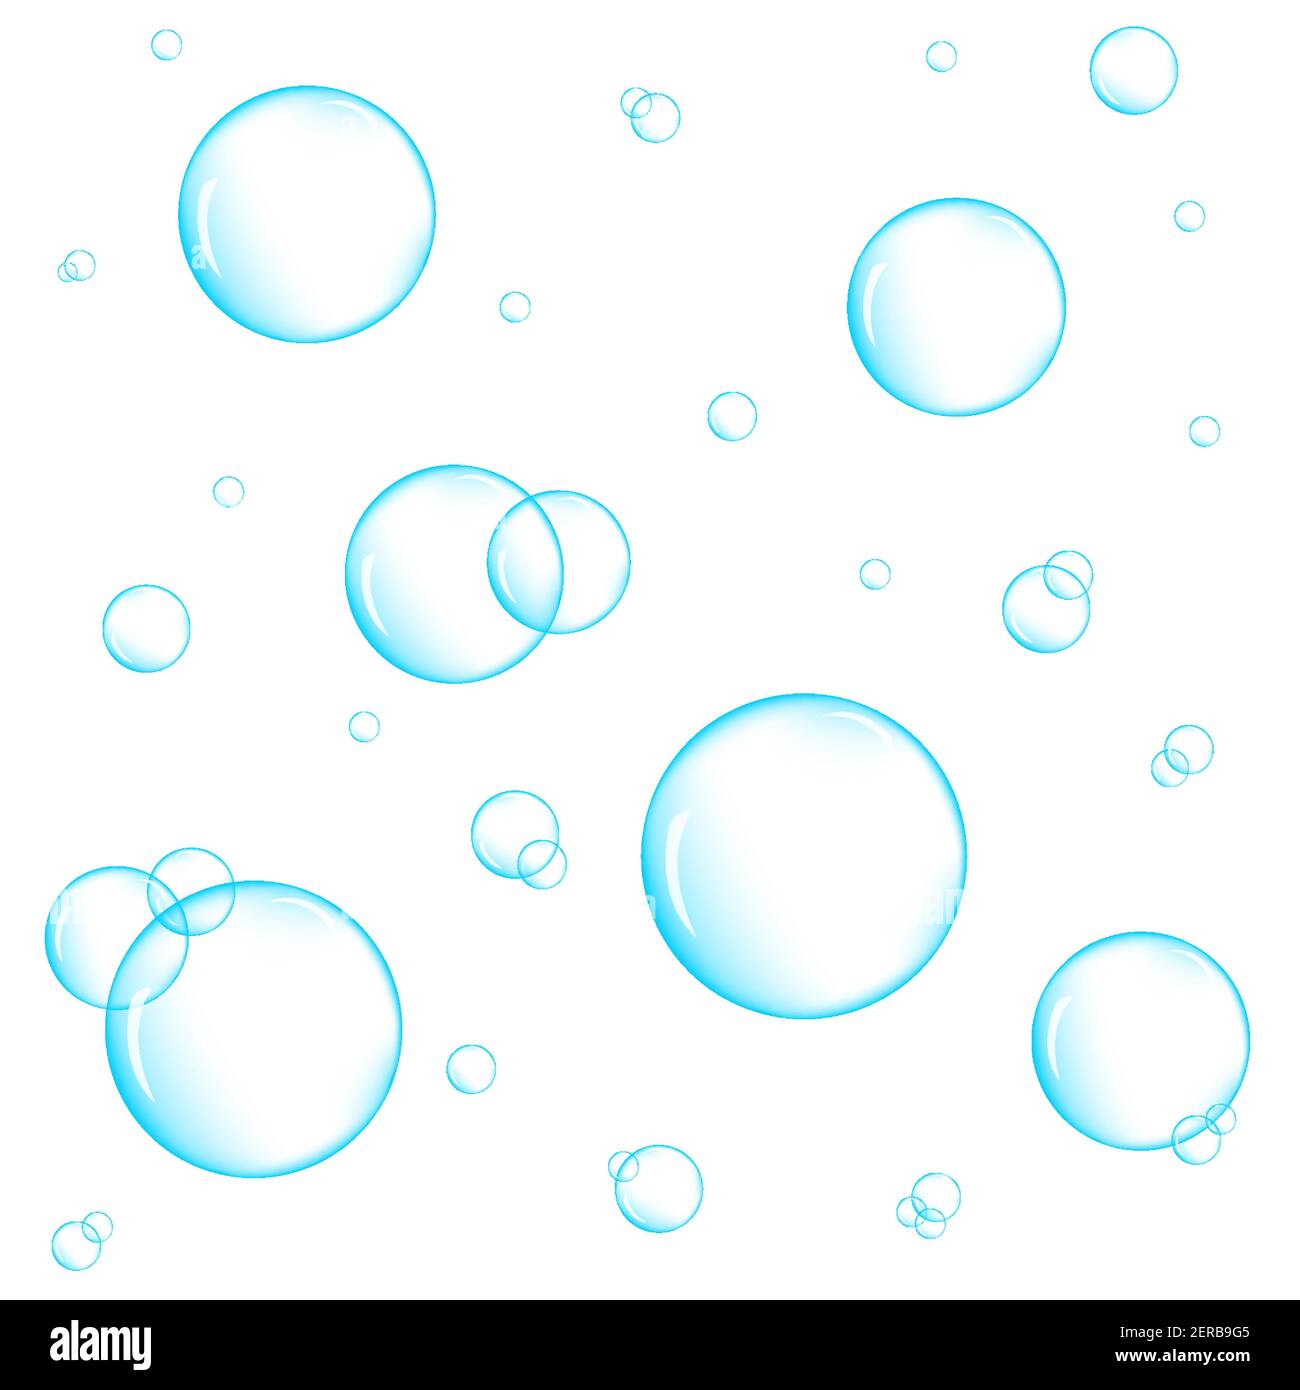 Realistische blaue Unterwasserblasen auf weißem Hintergrund. Aquarium Wasserstrahl, Seife oder Reinigungsschaum. Vektorgrafik. Stock Vektor